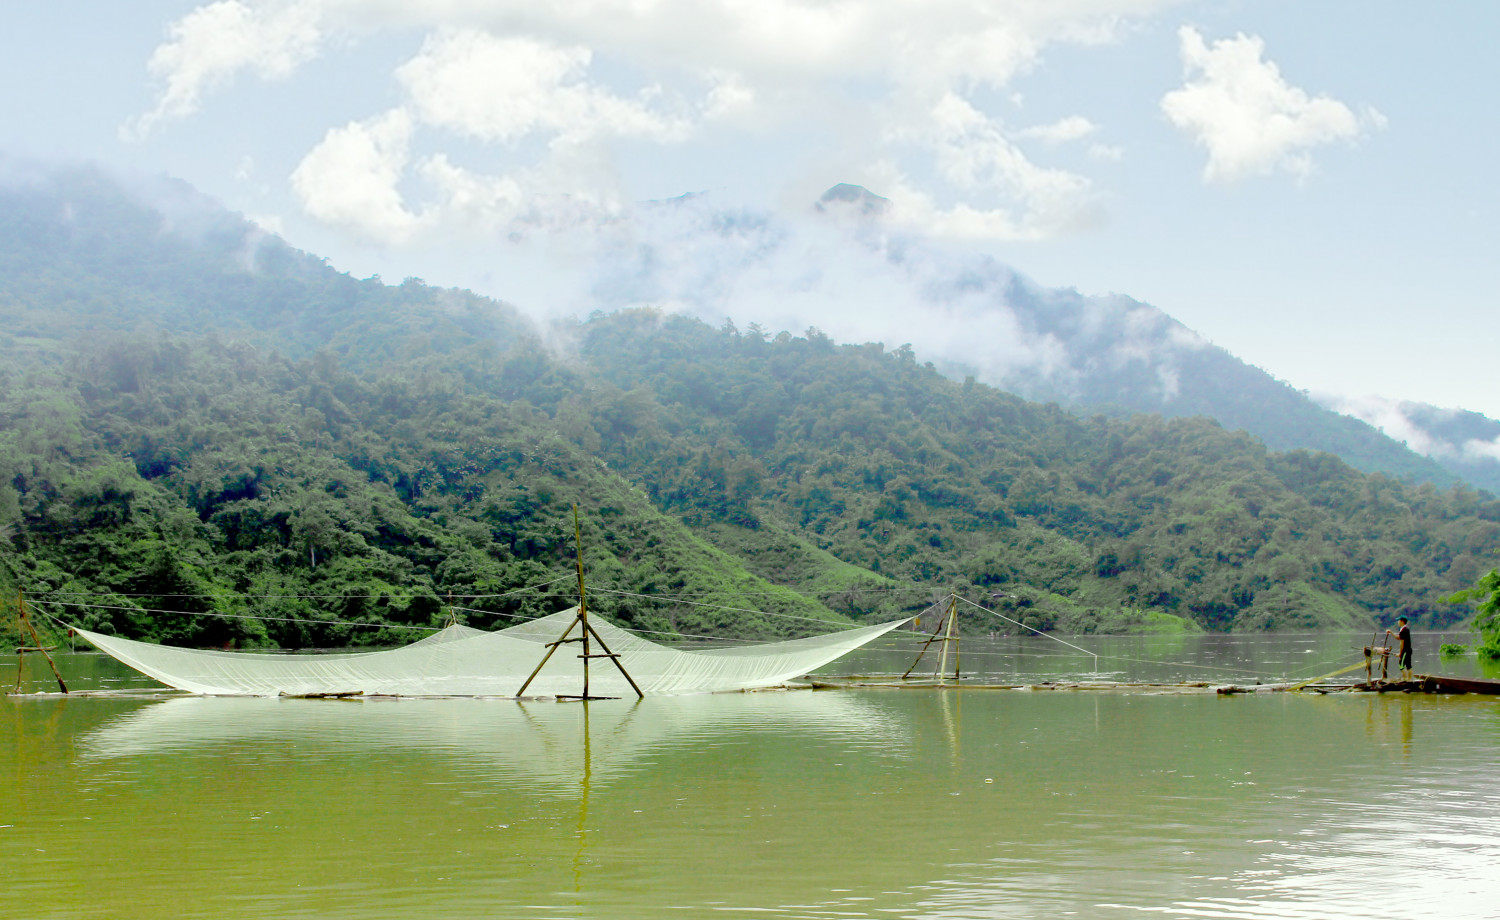 Hệ thống vó bè của người dân bản Nậm Ty (xã Nậm Hàng, huyện Nậm Nhùn) trên mặt hồ thủy điện Sơn La.